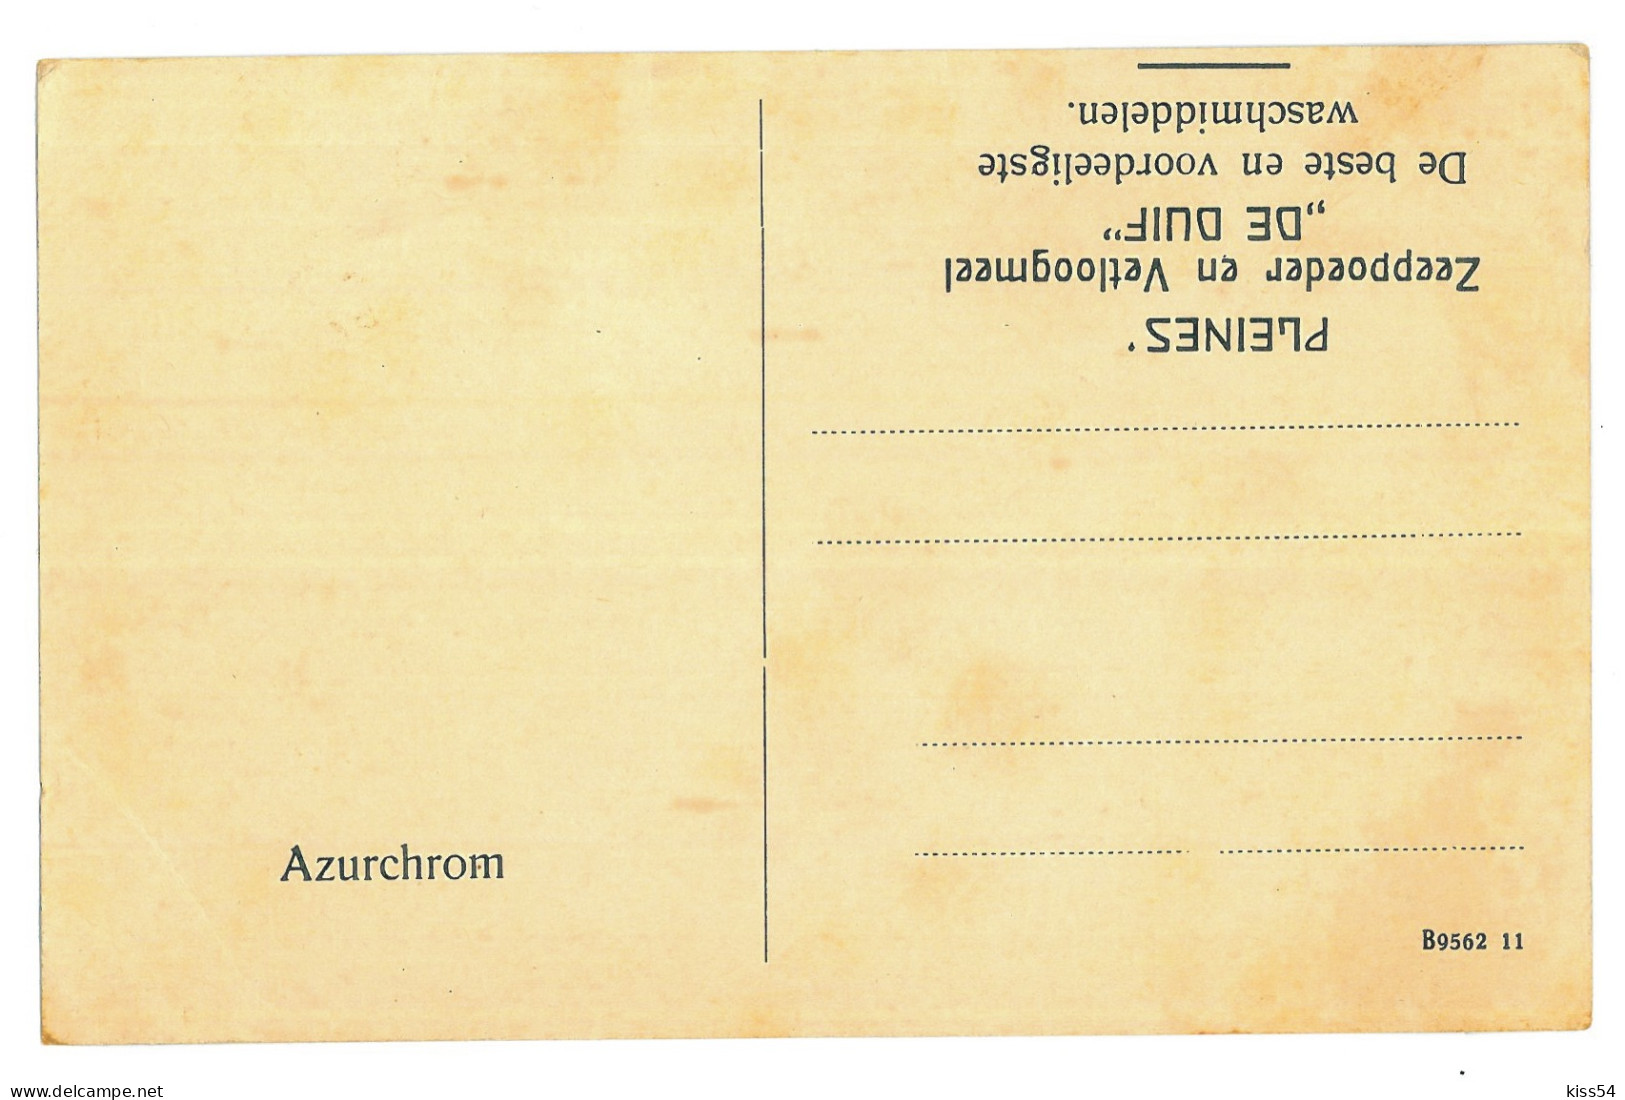 RO 81 - 22363 BUSTENI, Prahova, Romania - Old Postcard - Unused - Romania